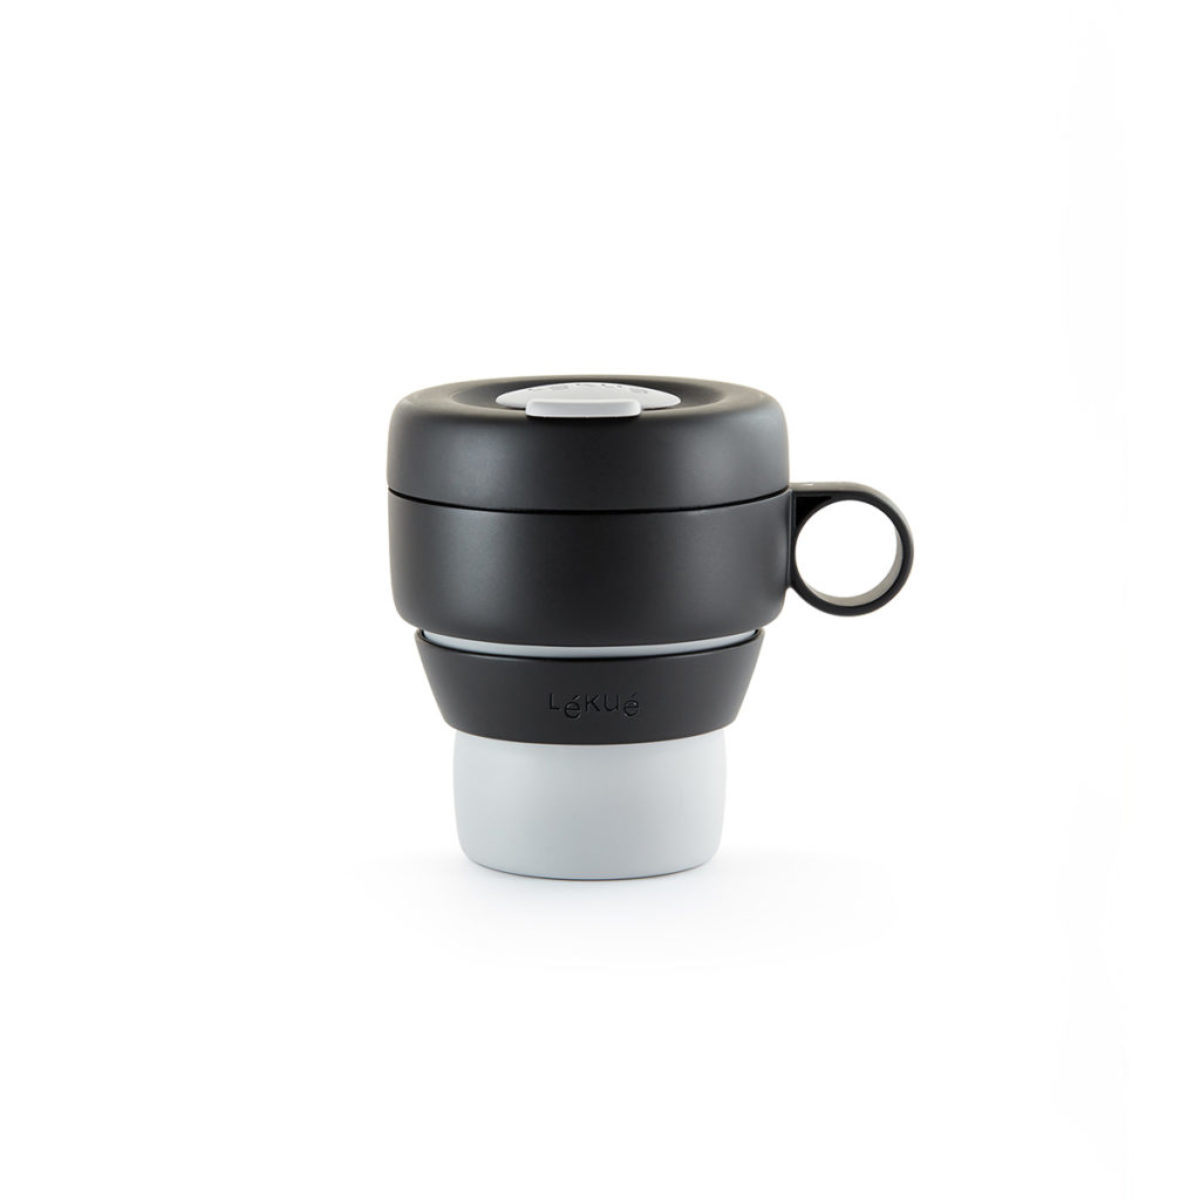 Silikonowy kubek na kawę składany Lekue 0301050G10M017